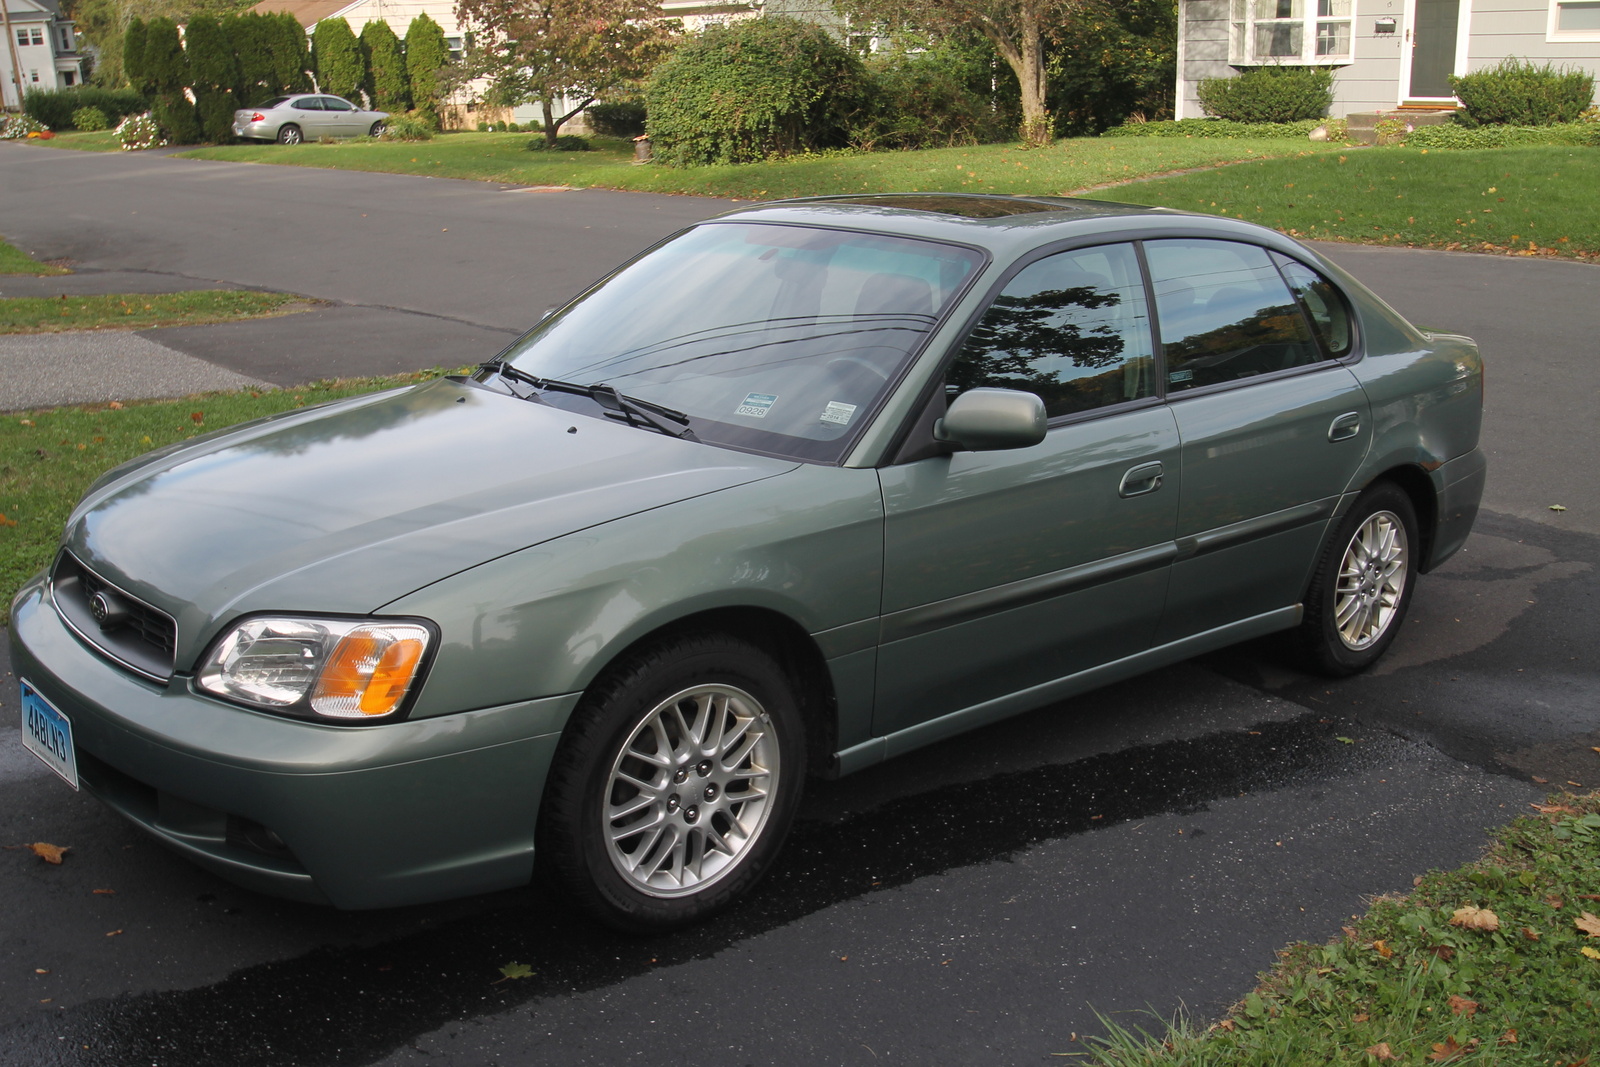 2003 Subaru Legacy Exterior Pictures CarGurus